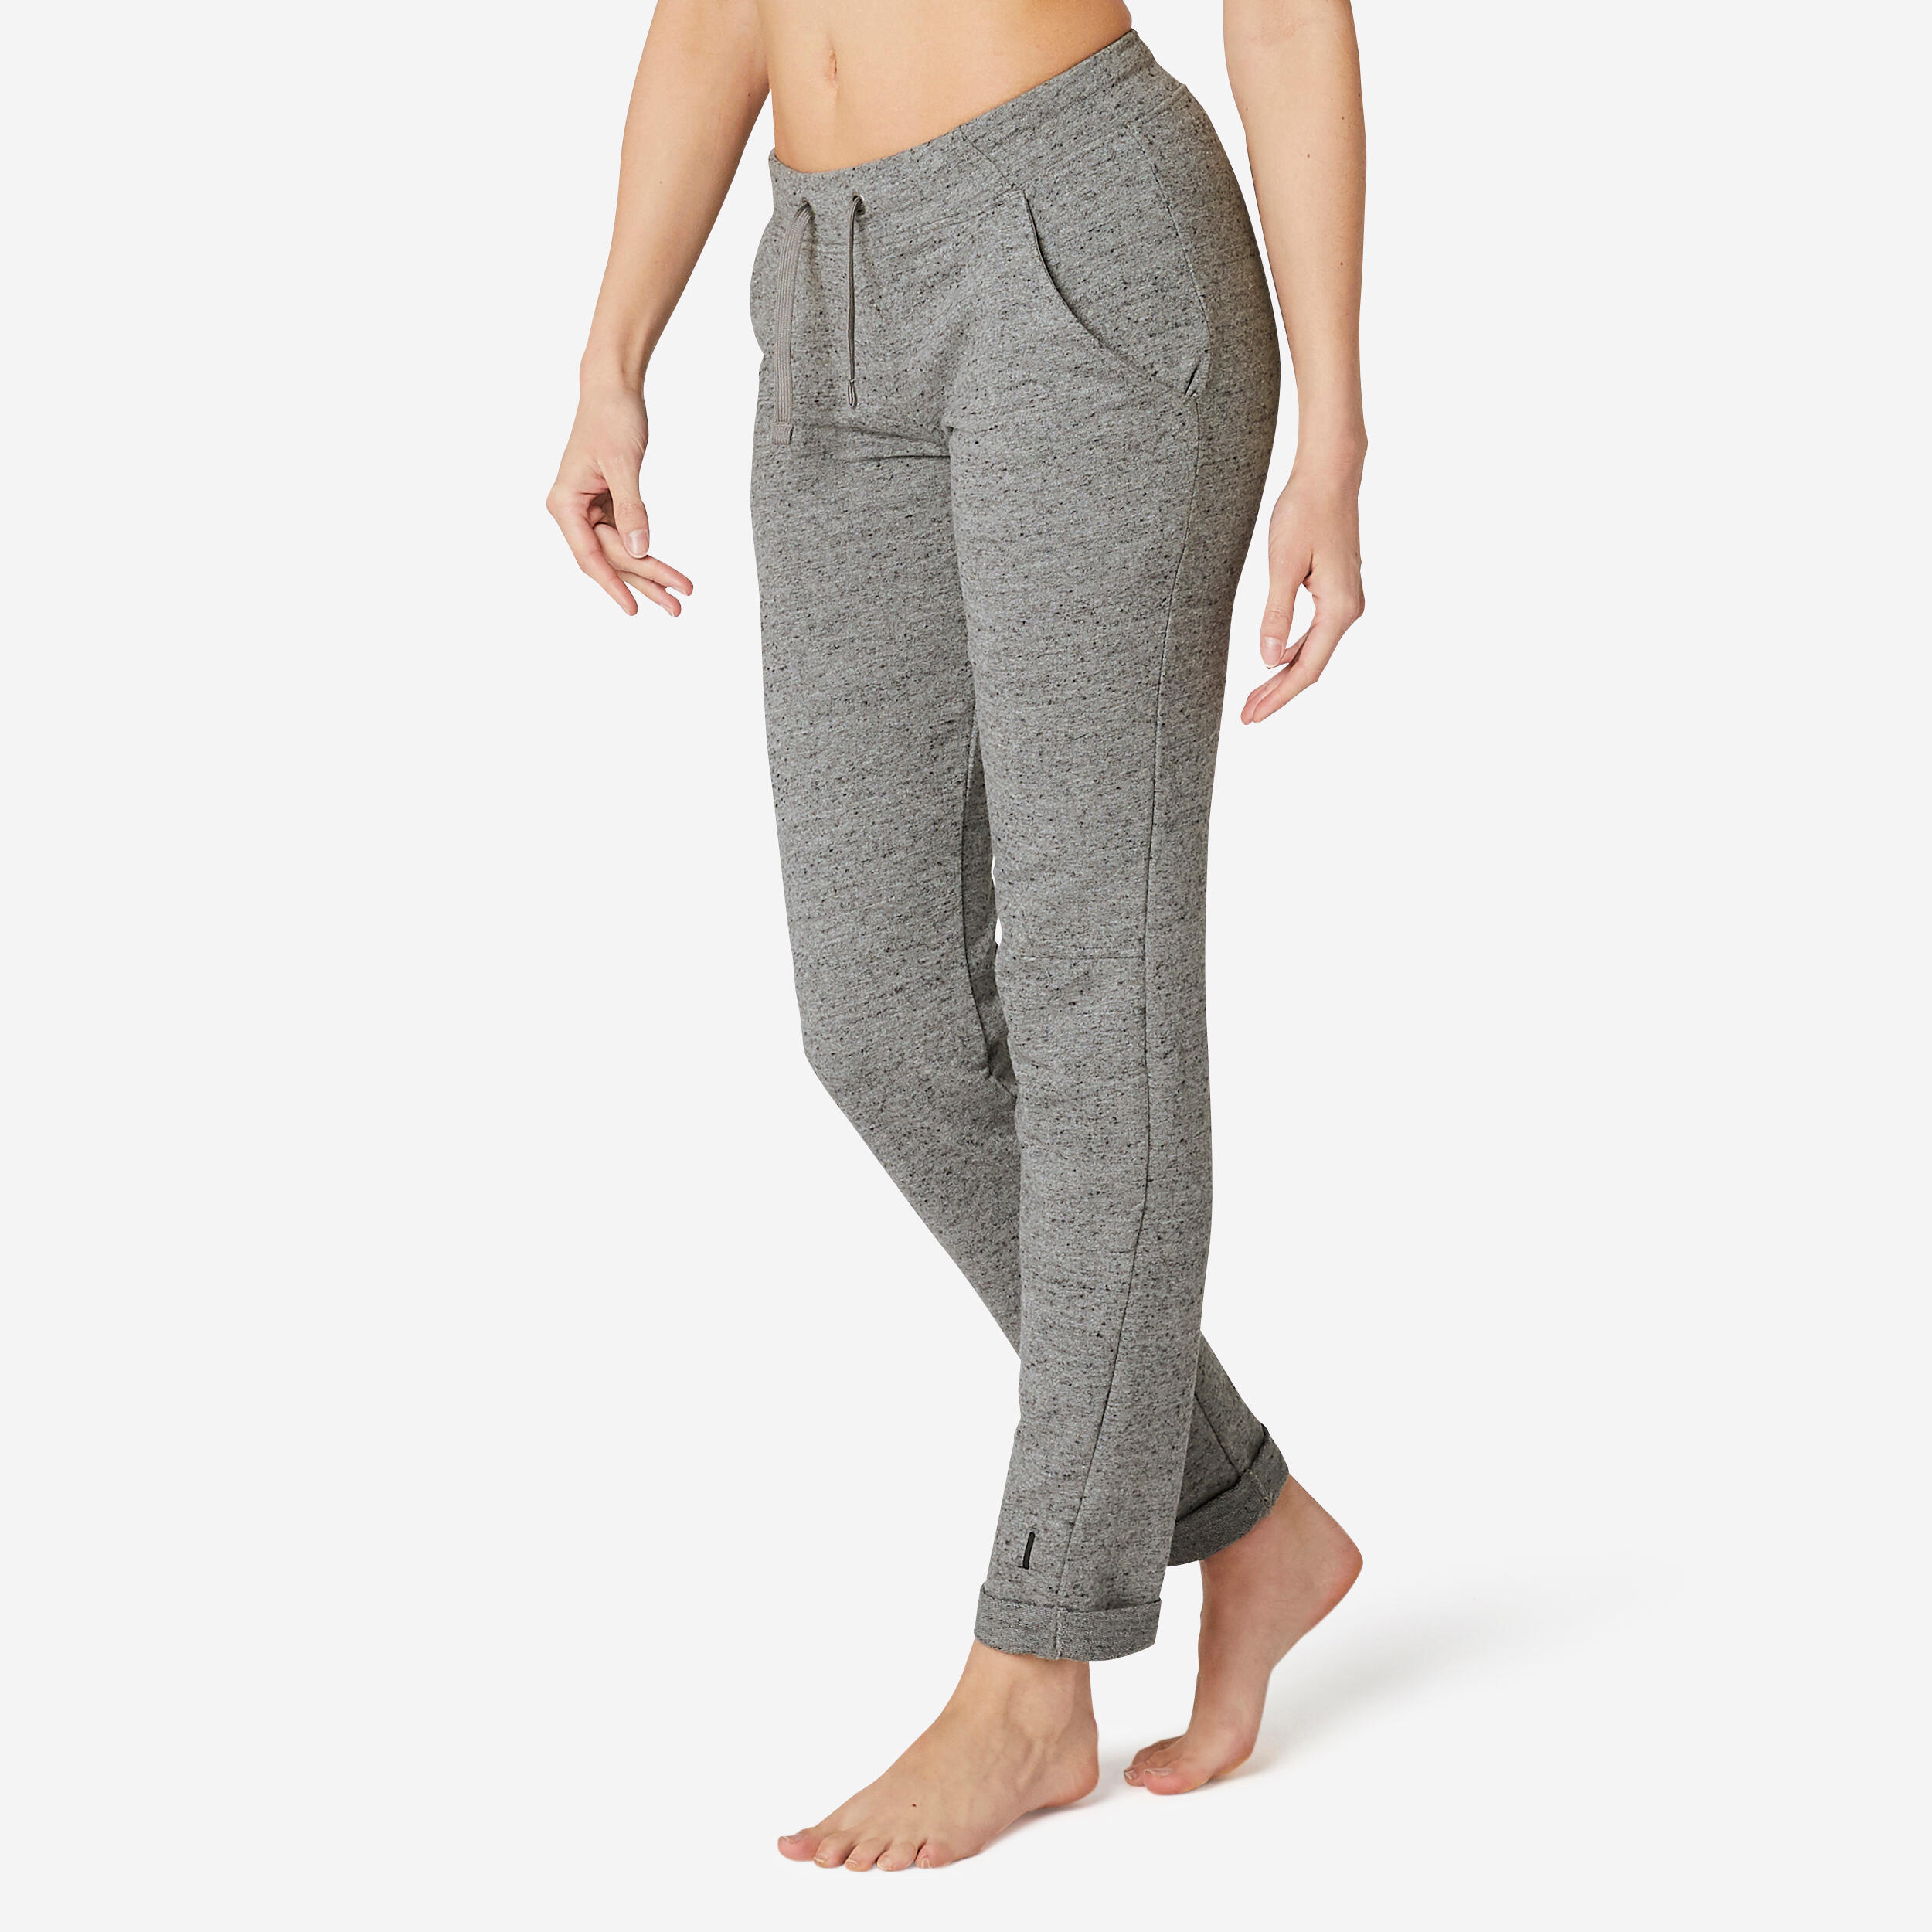 pantalon jogging femme gris